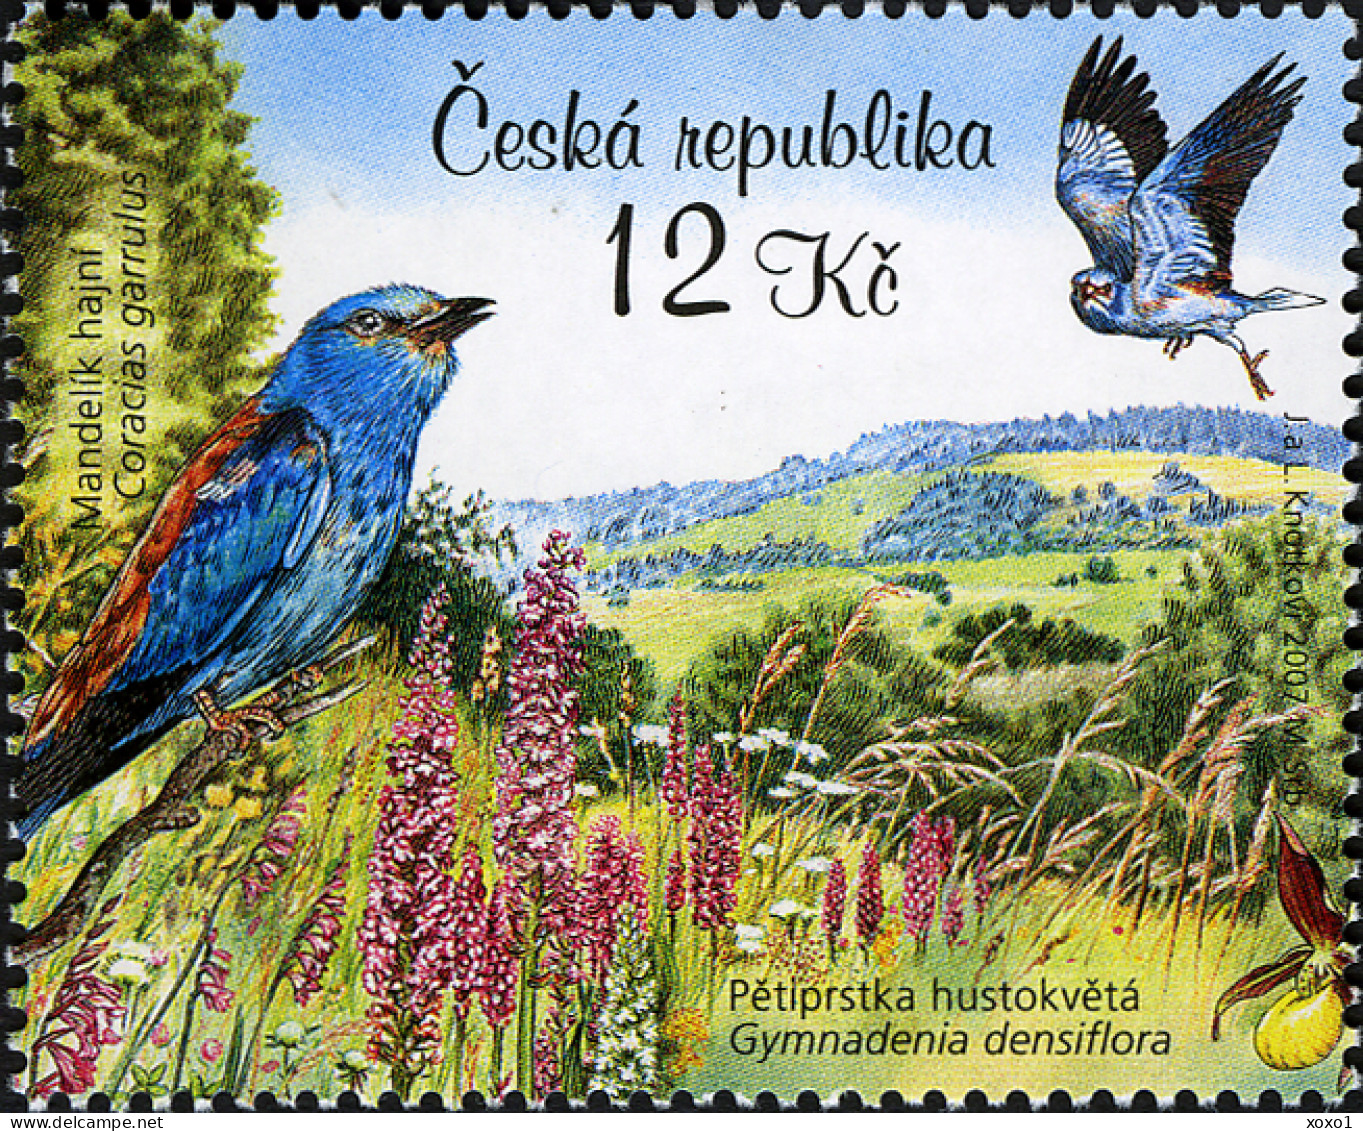 Czech Republic 2007 MiNr. (Block 28) Tschechische Republik UNESCO Birds Butterflies Flowers Orchids  S\sh   MNH** 5.00 € - UNESCO